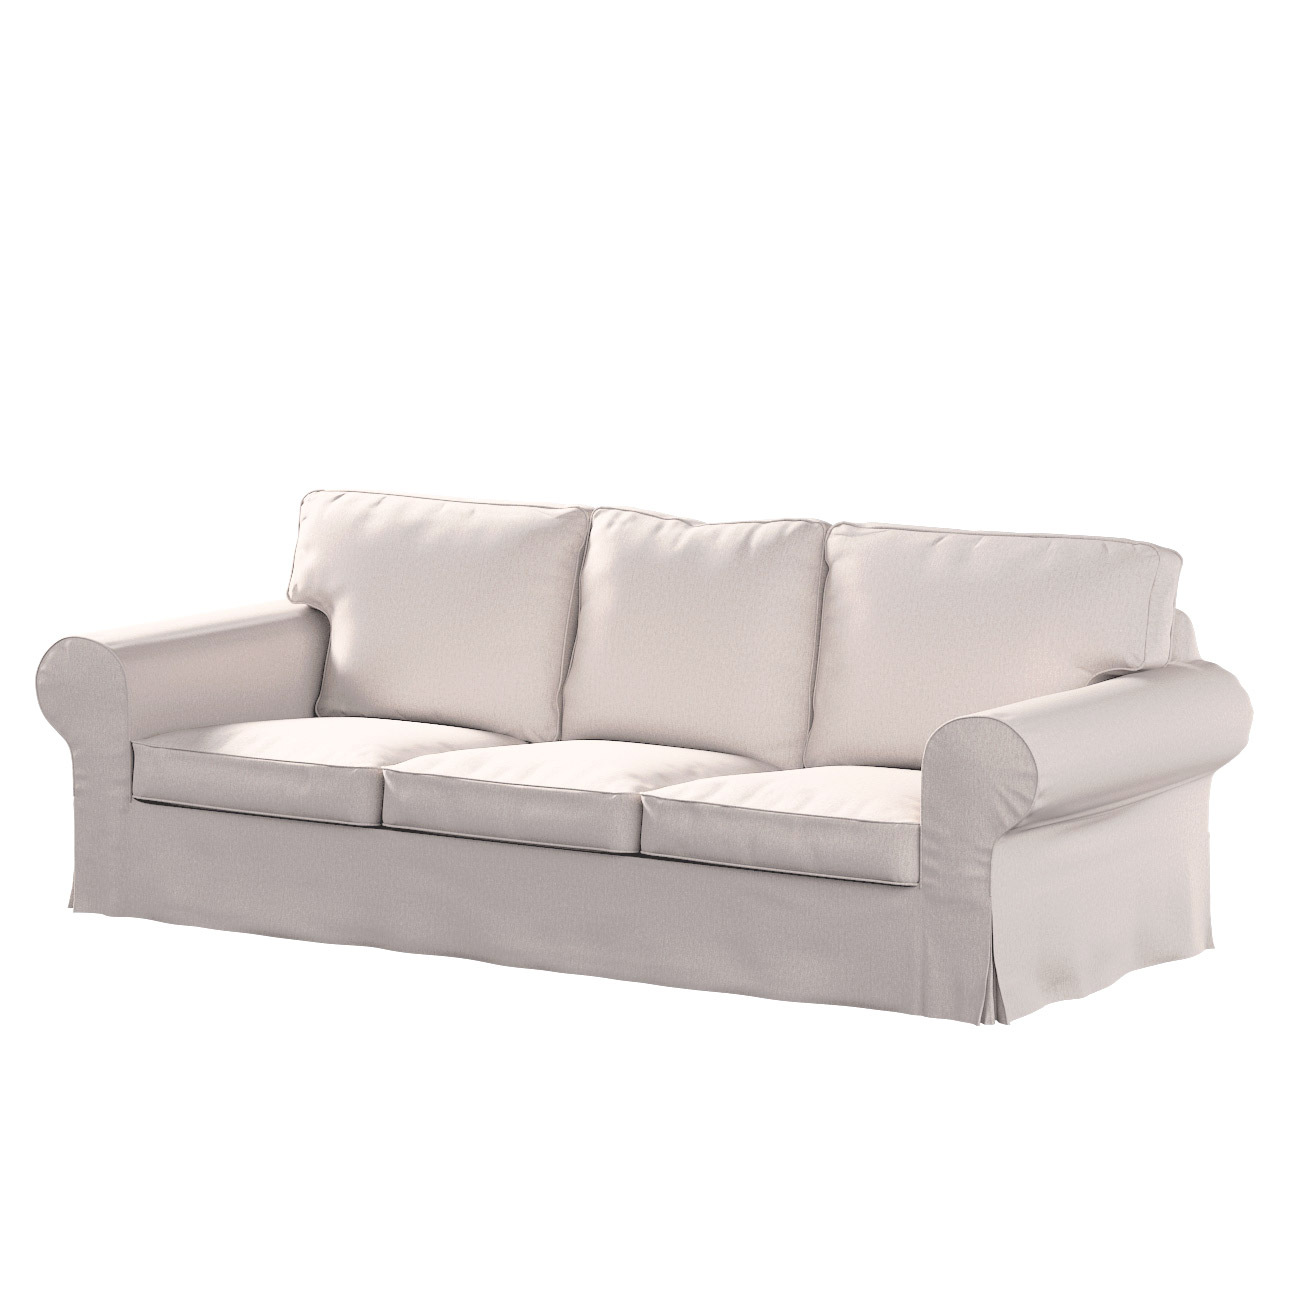 Bezug für Ektorp 3-Sitzer Sofa nicht ausklappbar, hellbeige, Sofabezug für günstig online kaufen